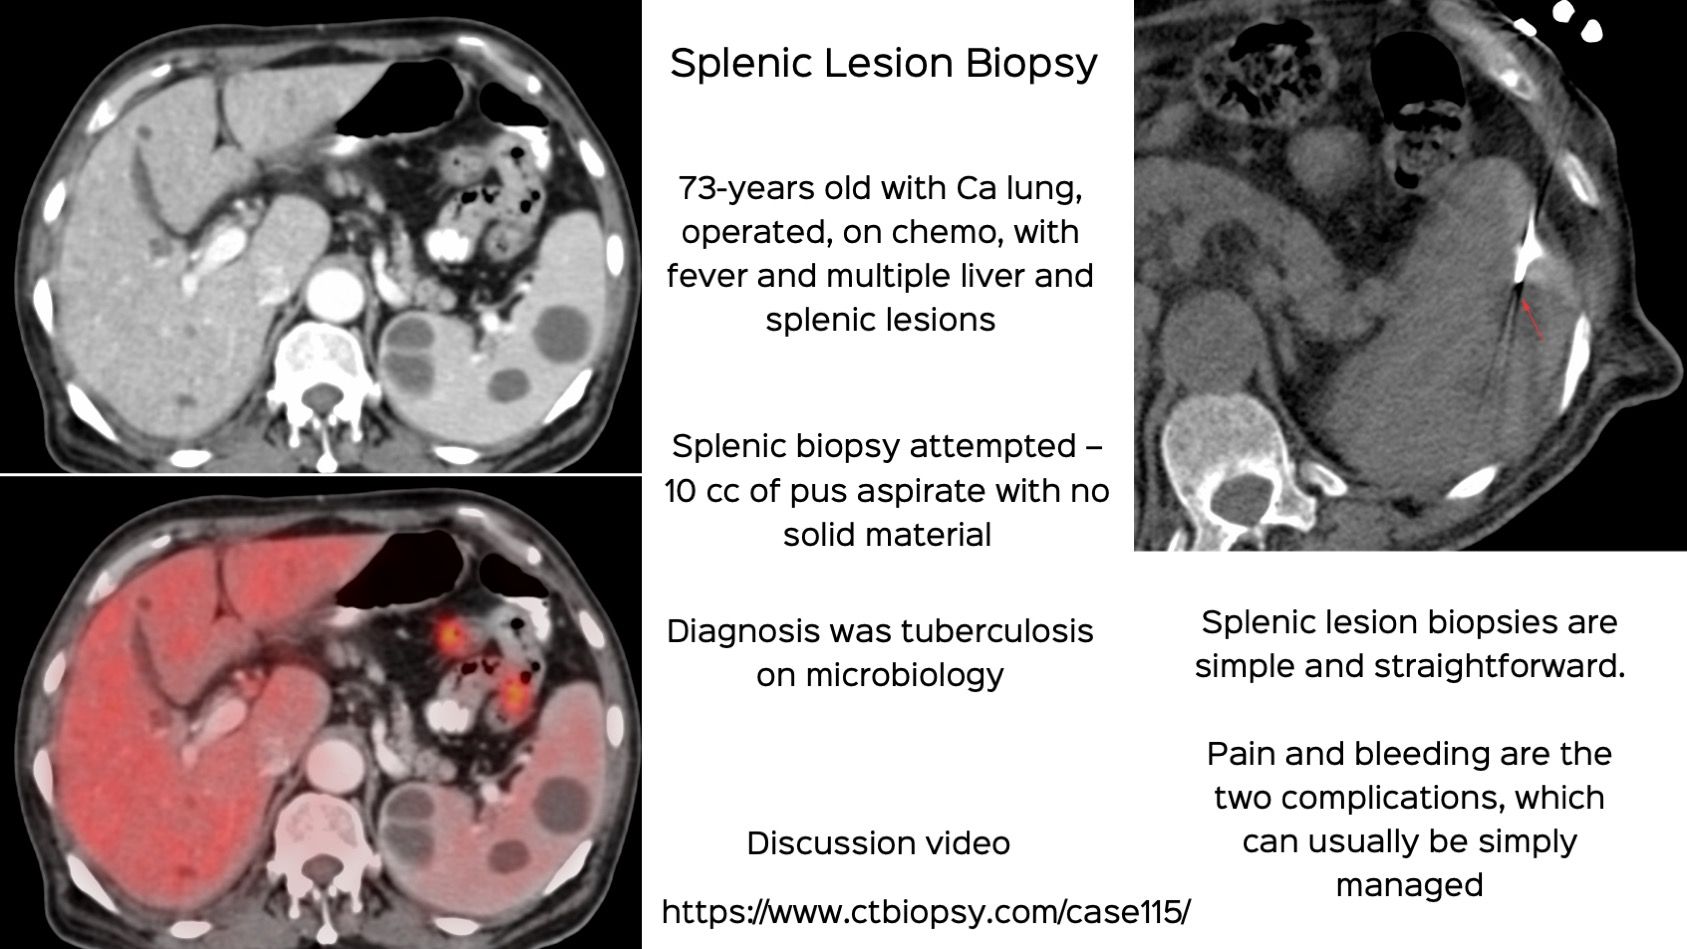 Case 115: Splenic Lesion Biopsy